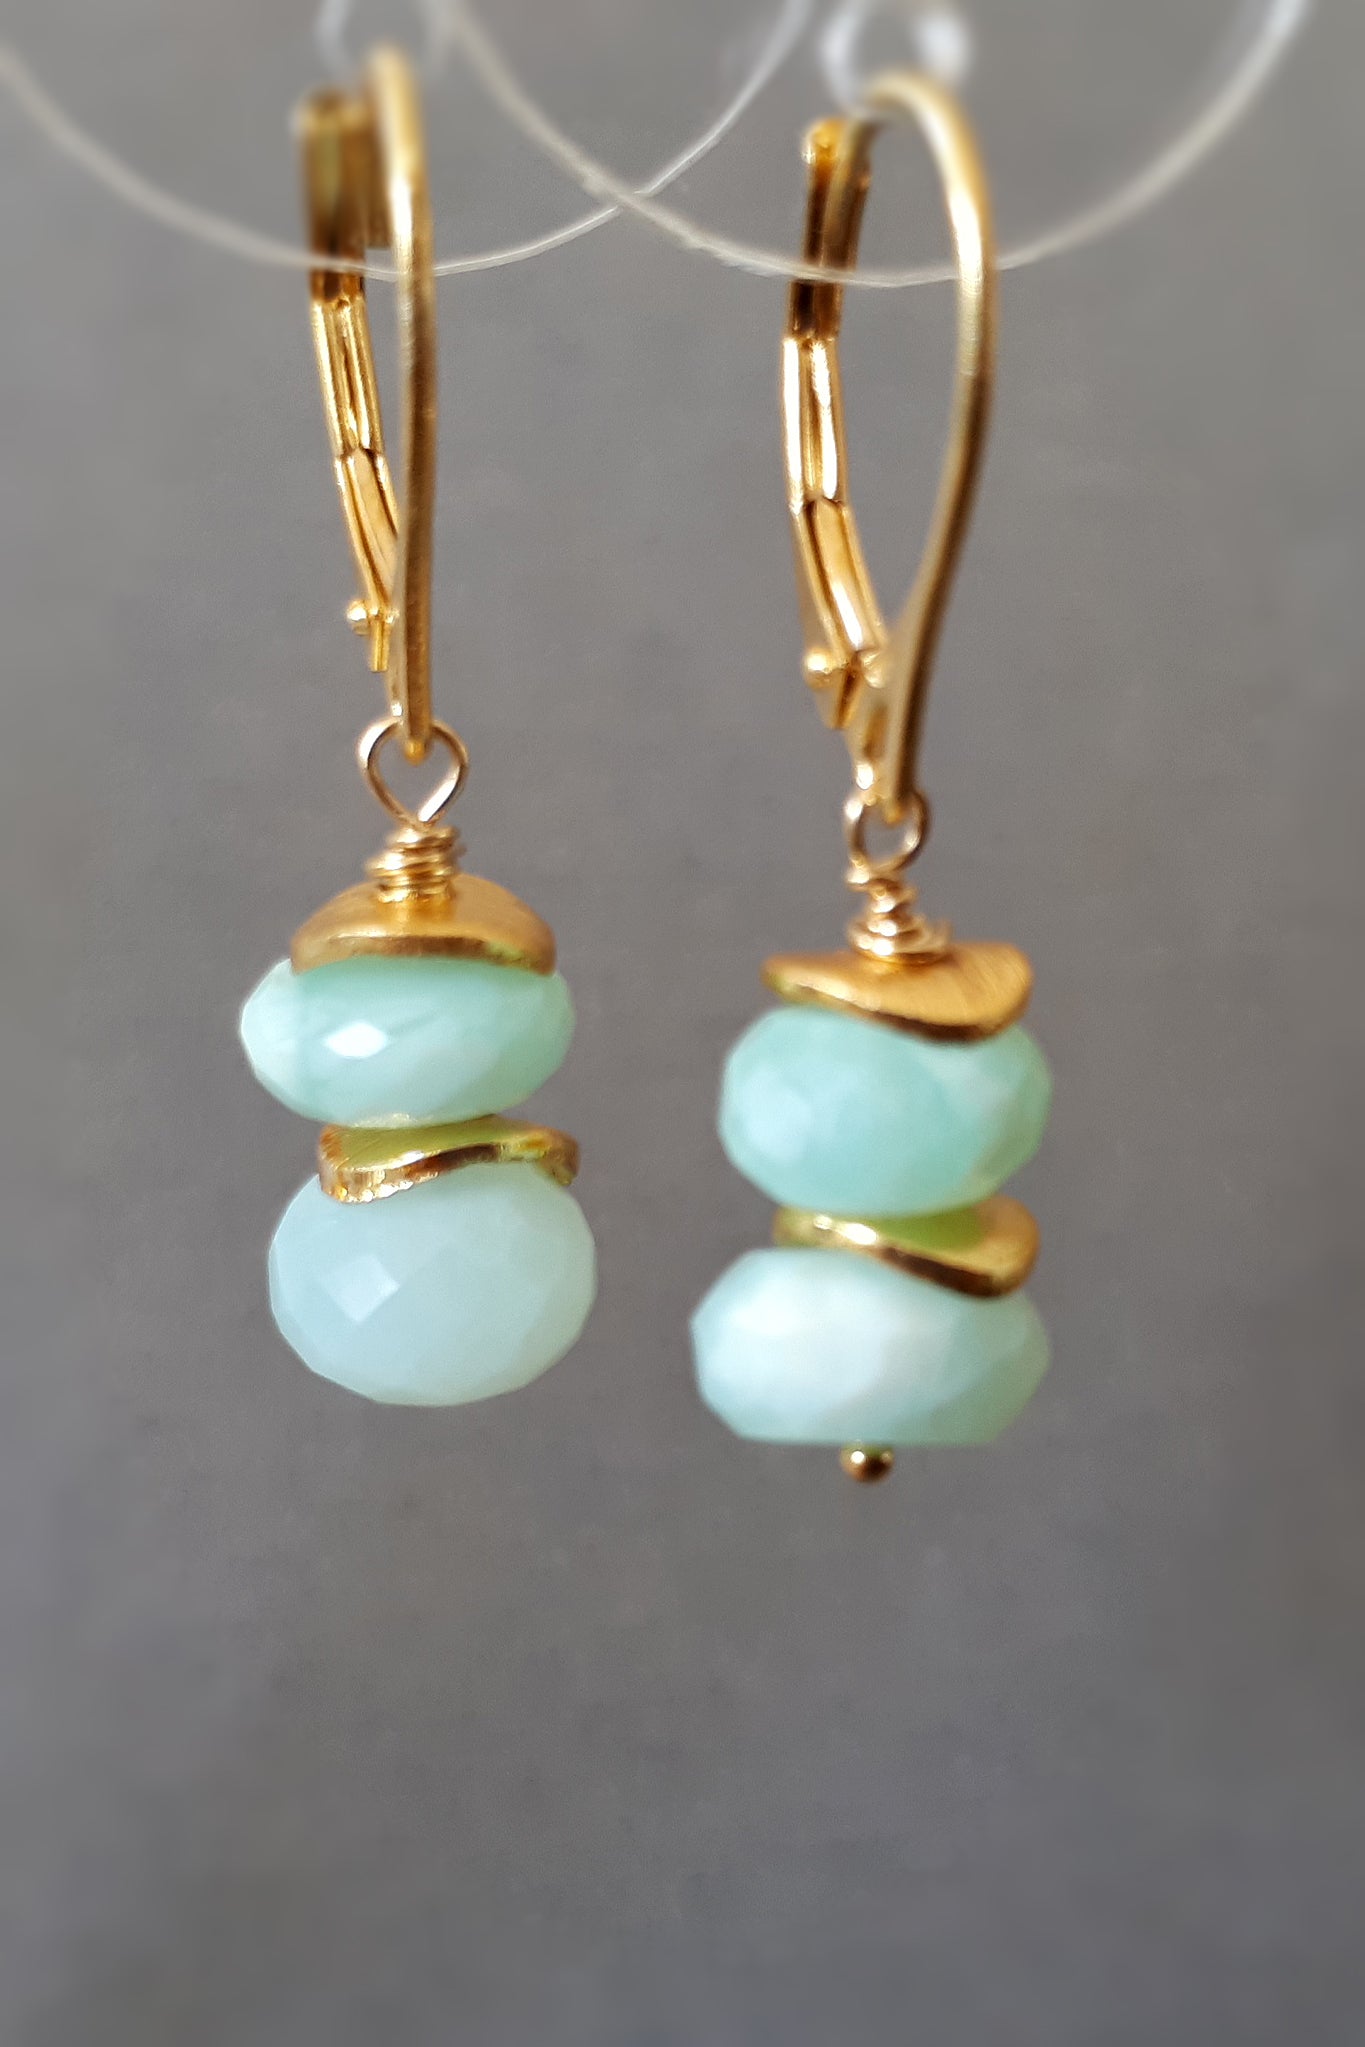 Peruvian blue opal drop earrings